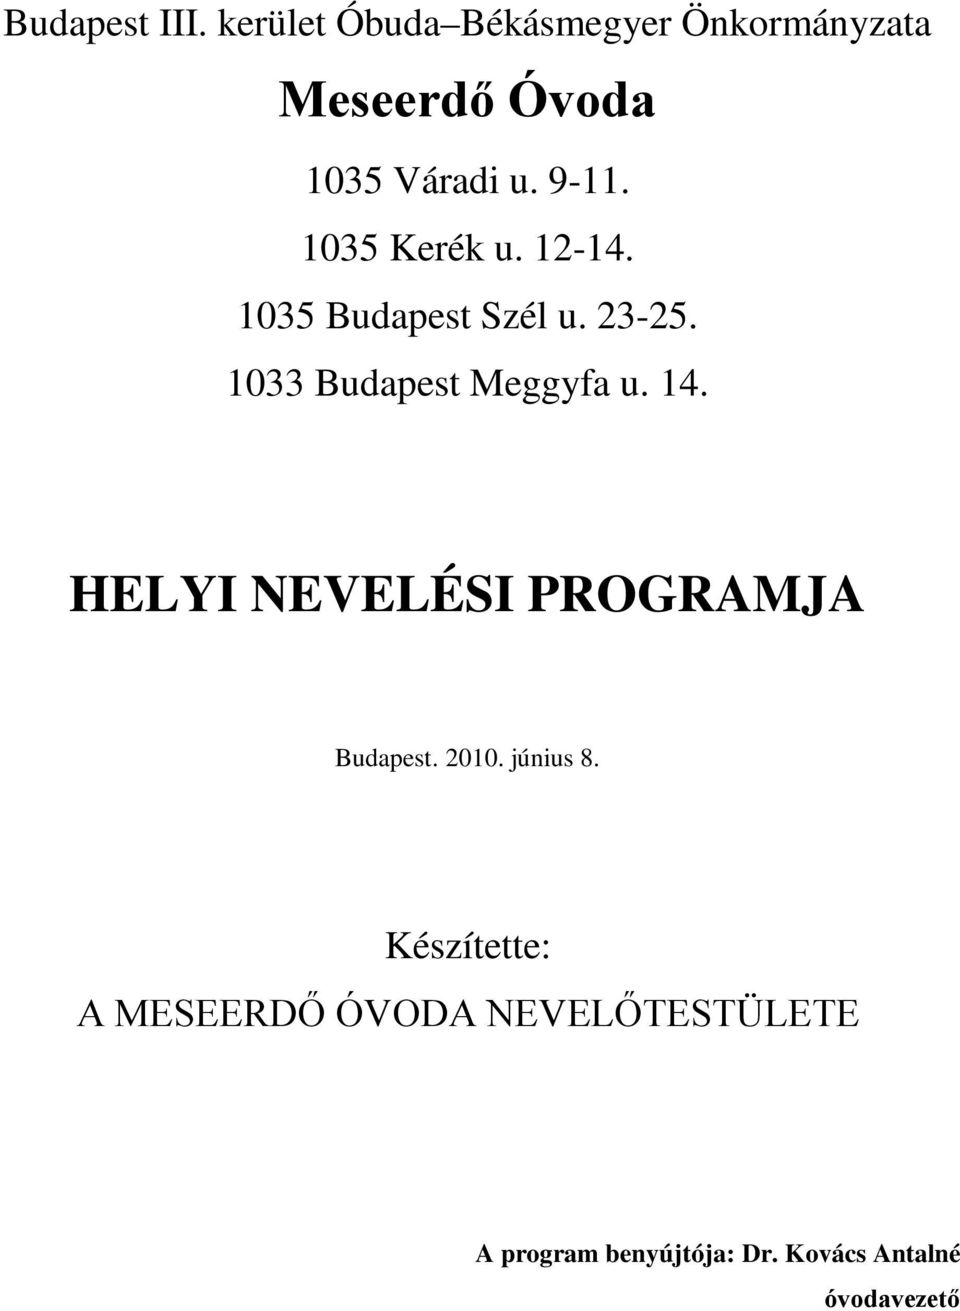 1035 Kerék u. 12-14. 1035 Budapest Szél u. 23-25. 1033 Budapest Meggyfa u. 14.